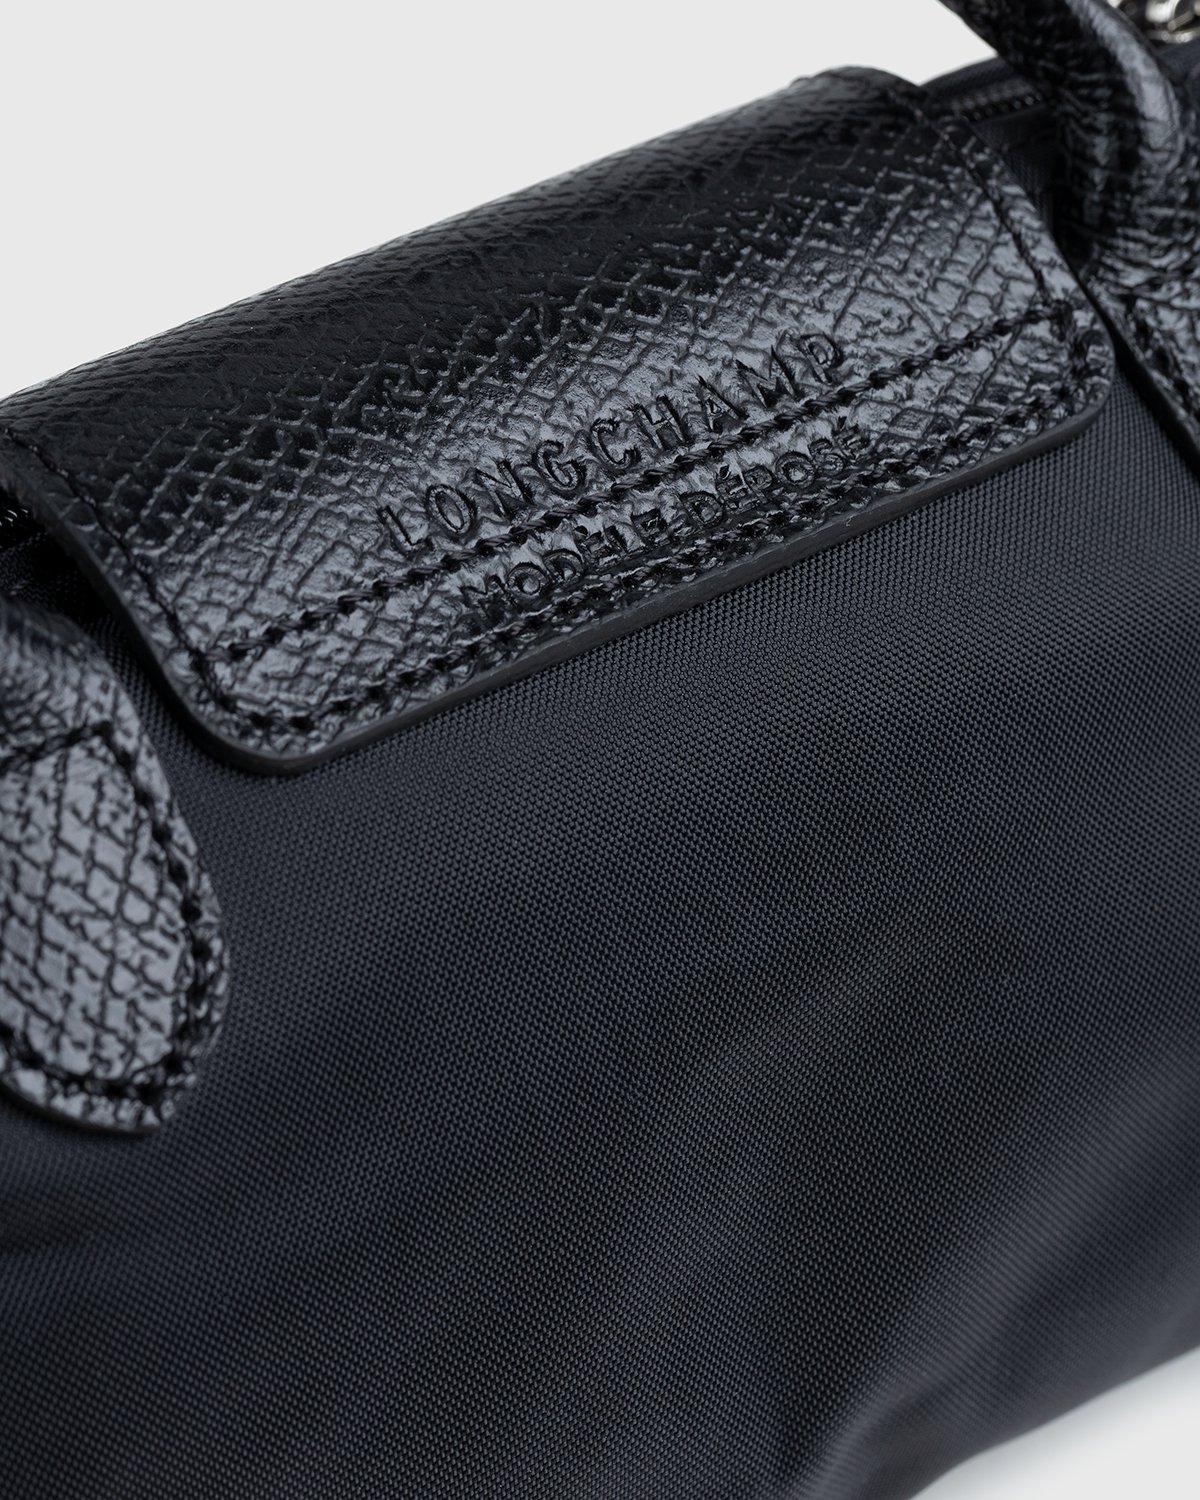 Longchamp x André Saraiva - Le Pliage André Pouch Black - Accessories - Black - Image 4